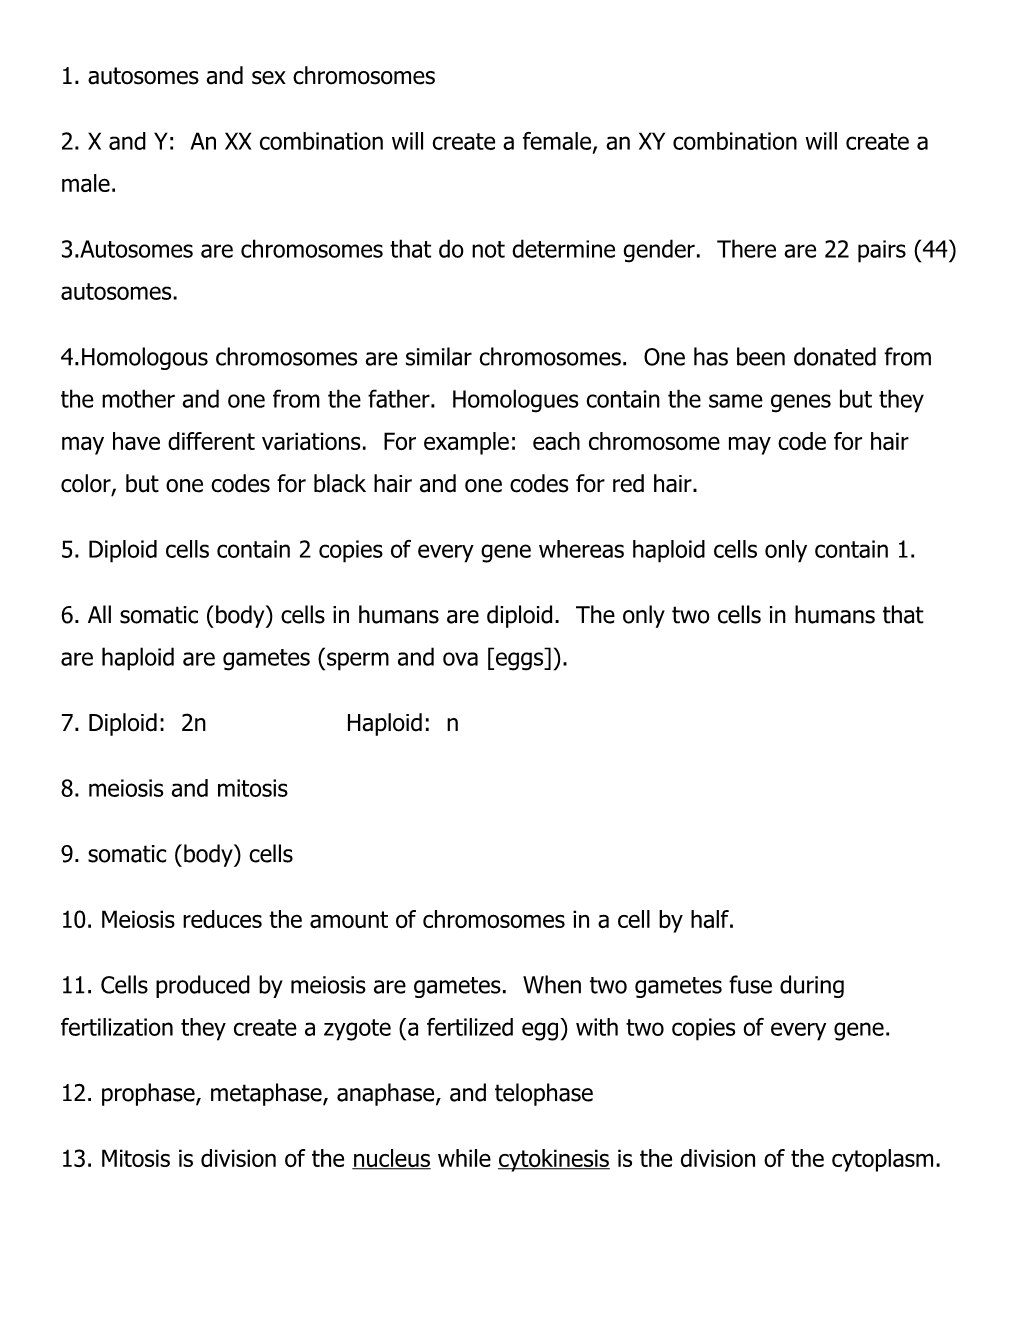 1. Autosomes and Sex Chromosomes